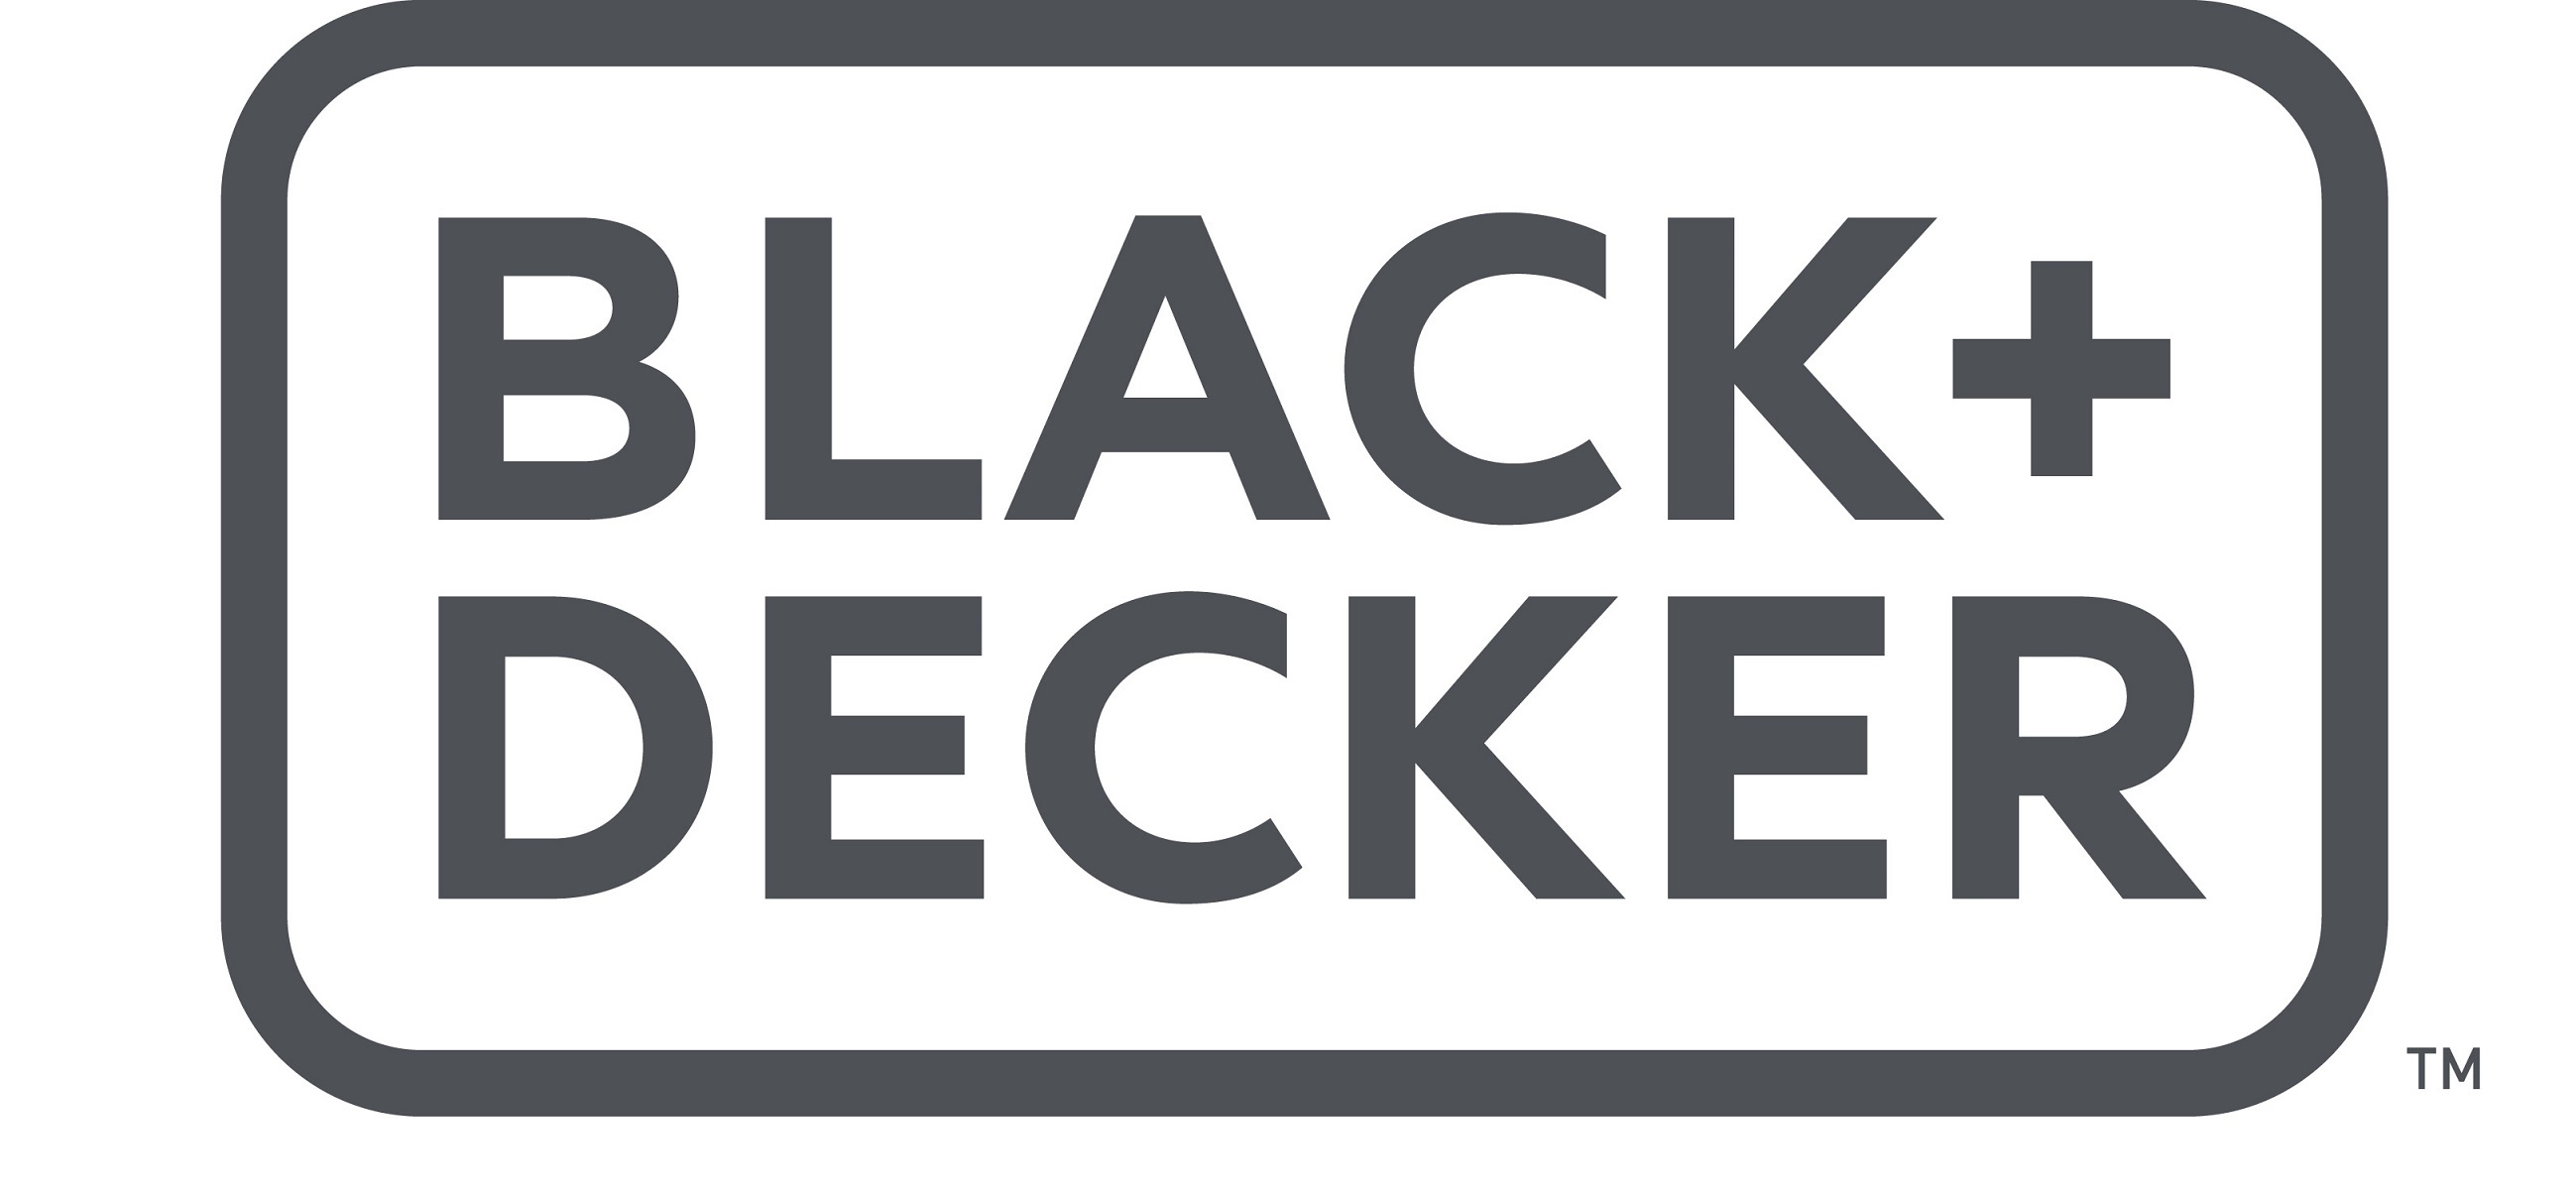 BLACK+DECKER BEMW461BH-QS Tondeuse à Gazon Filaire 6 Hauteurs, 1400 W, Orange, 34 cm